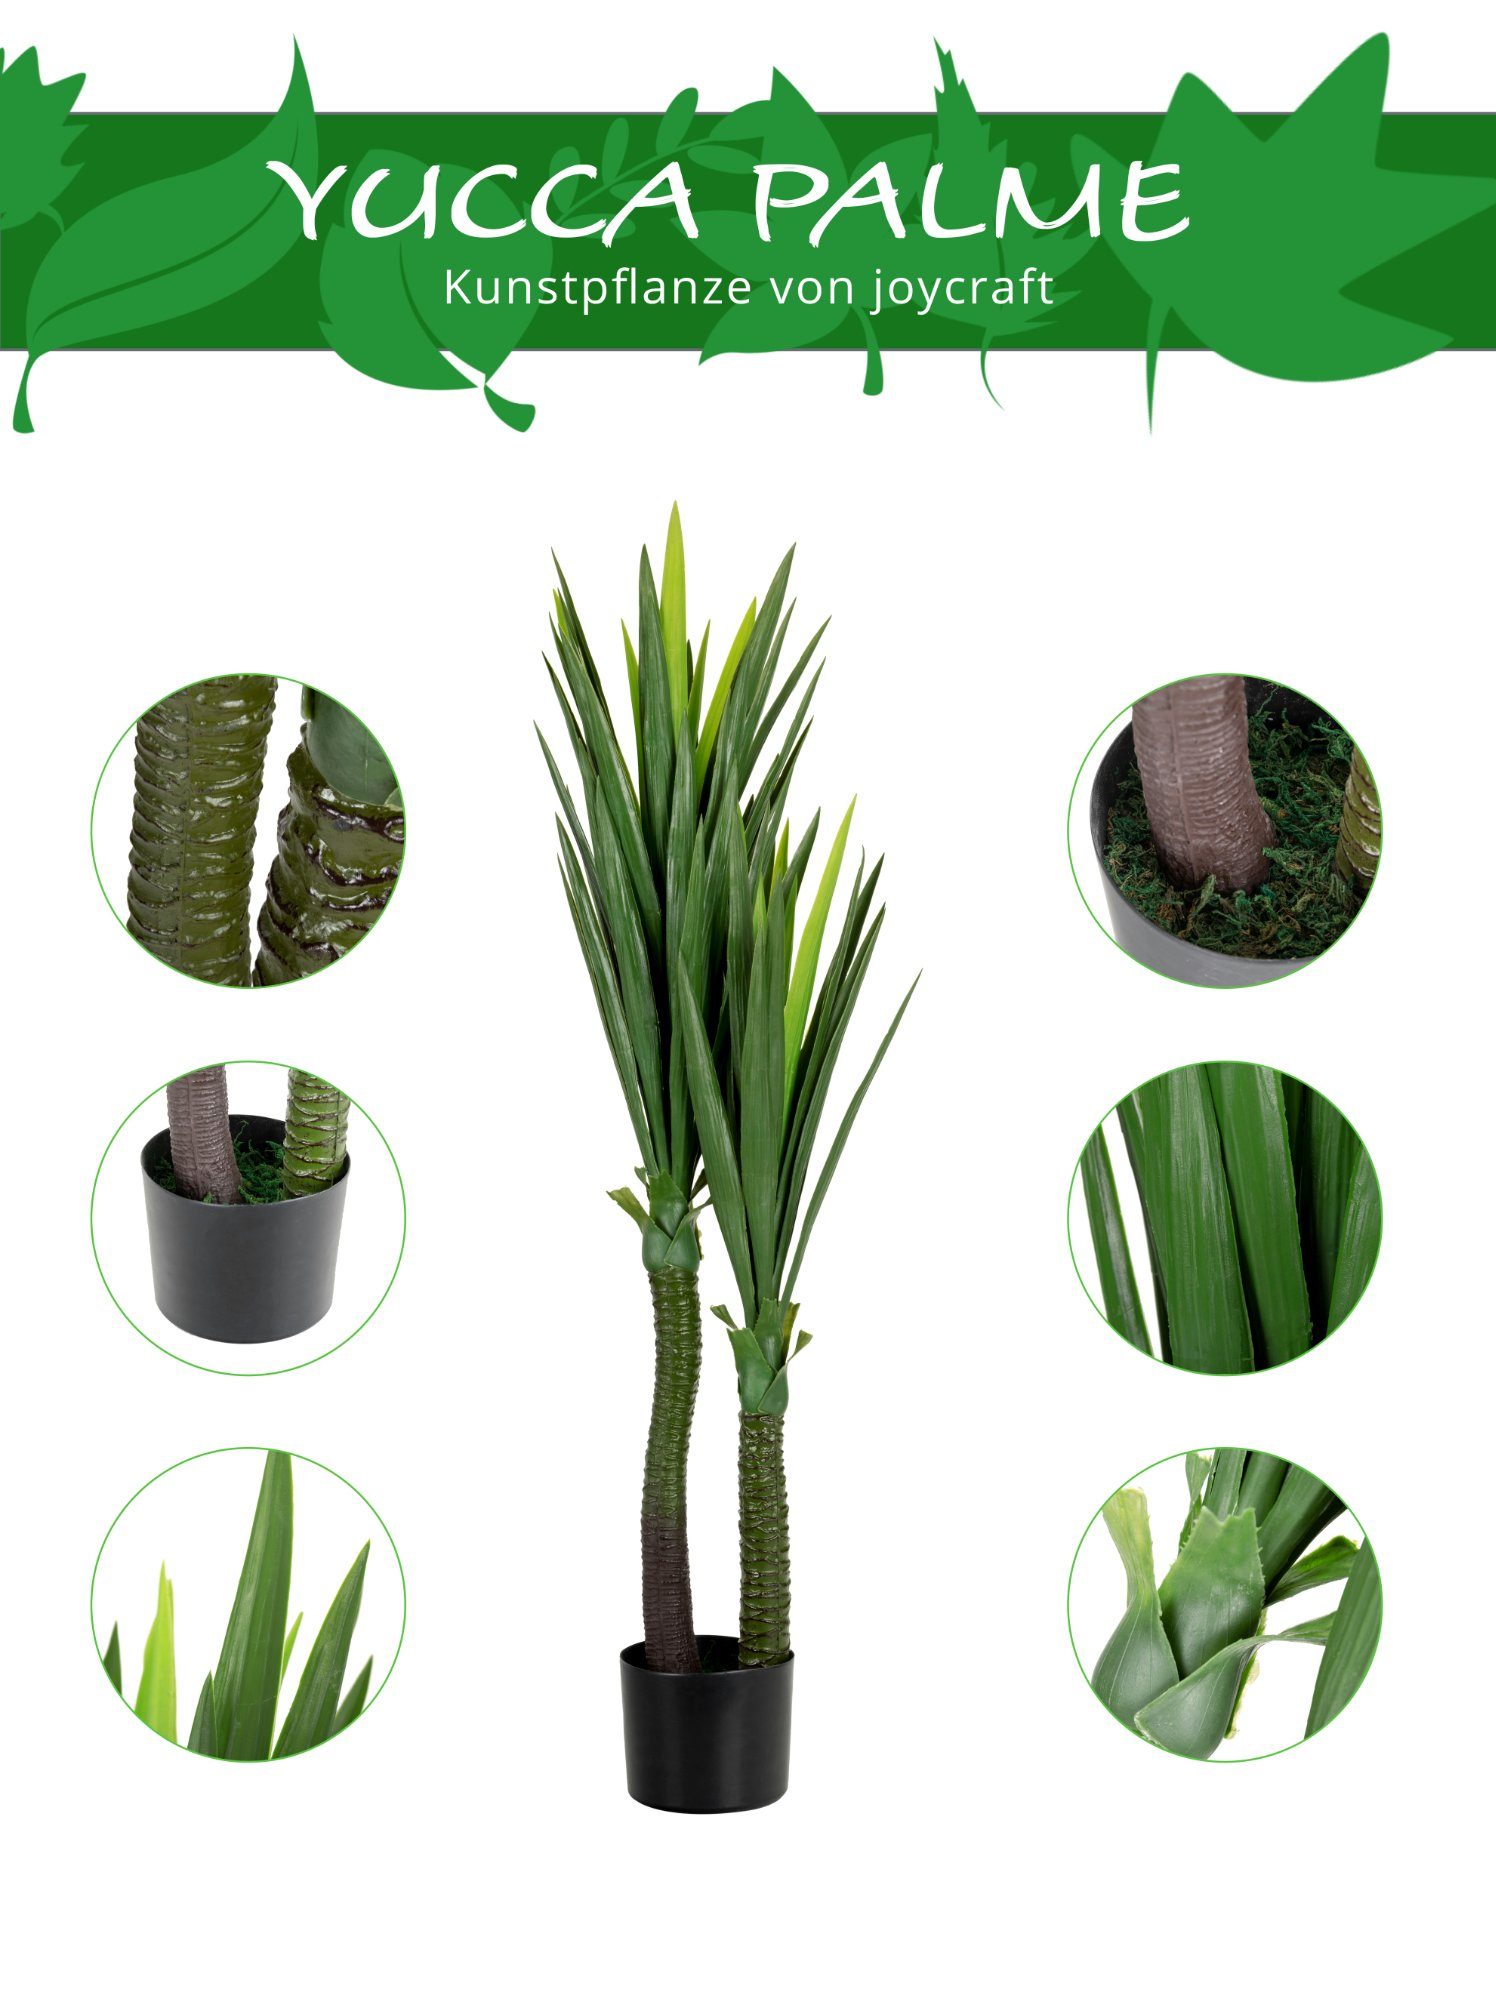 joycraft, Kunstpflanze künstliche im Höhe Kunststofftopf Yuccapalme, Kunstpalme 120 YU-115 Palme cm, Palmllilie